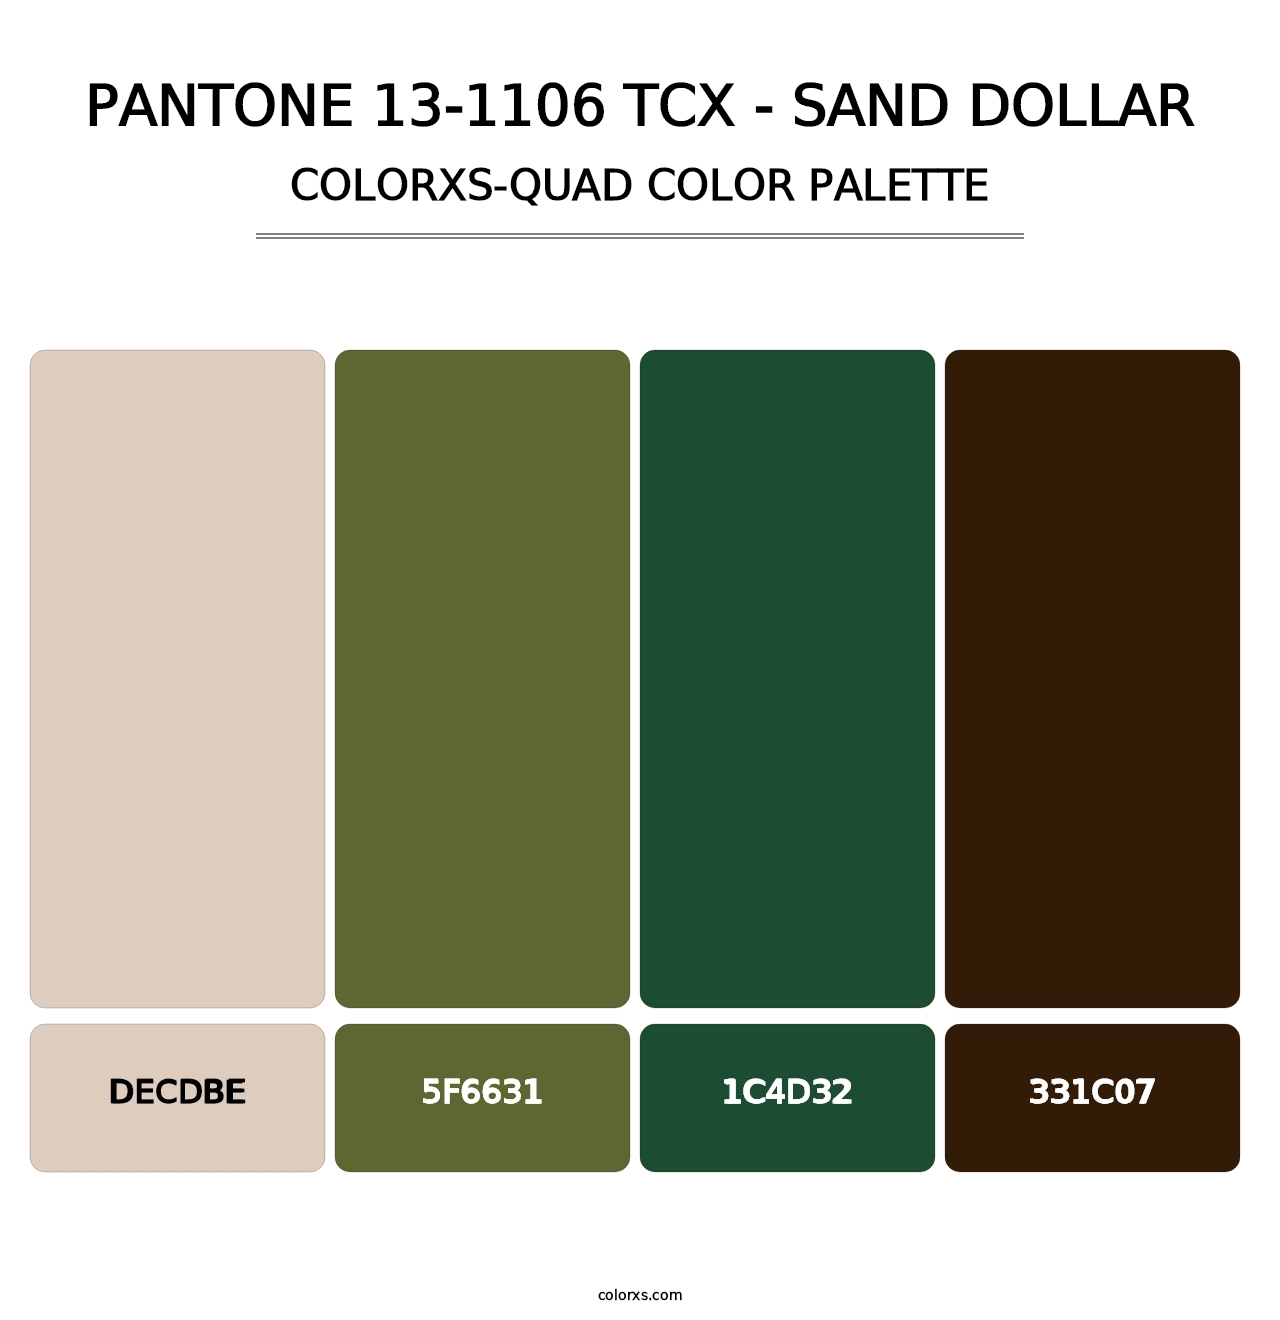 PANTONE 13-1106 TCX - Sand Dollar - Colorxs Quad Palette